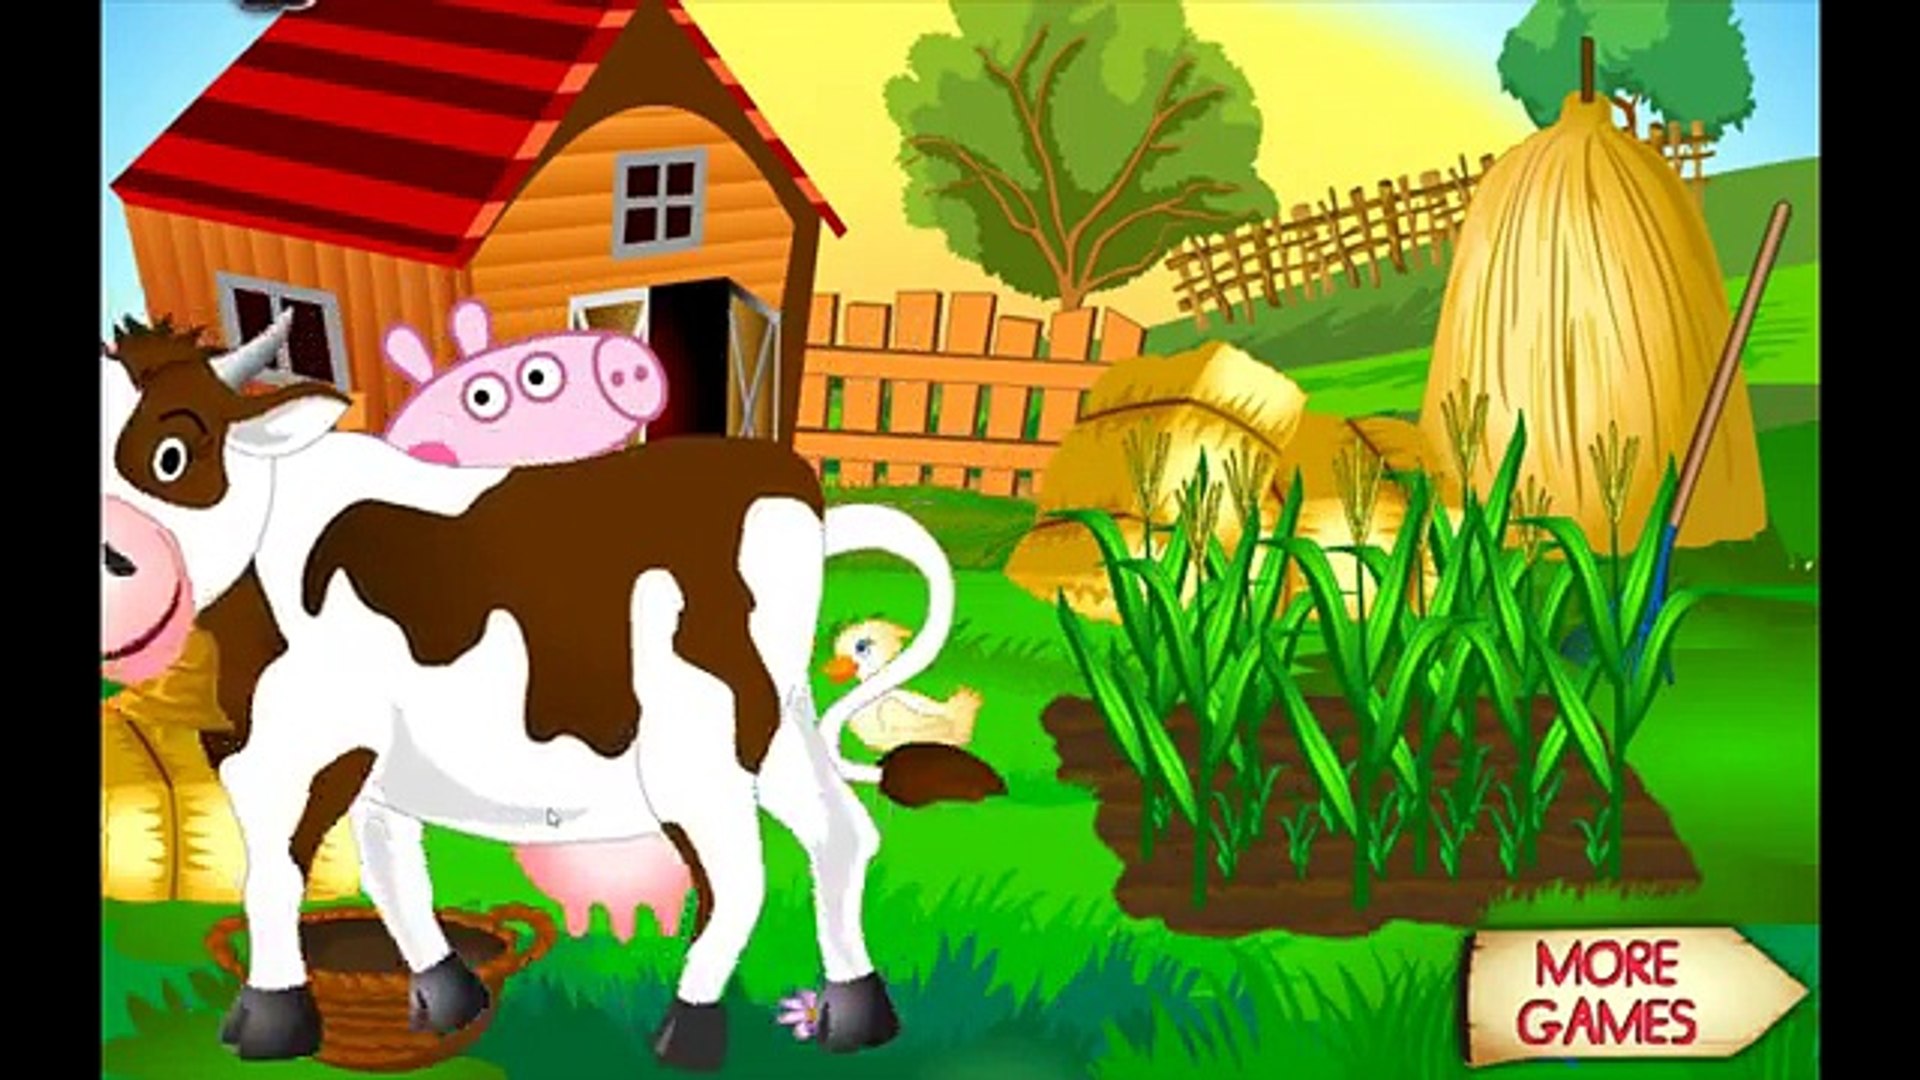 ⁣Peppa Pig Games - Peppa Pig Farm - Peppa Pig Room Decor - Peppa Pig Cool